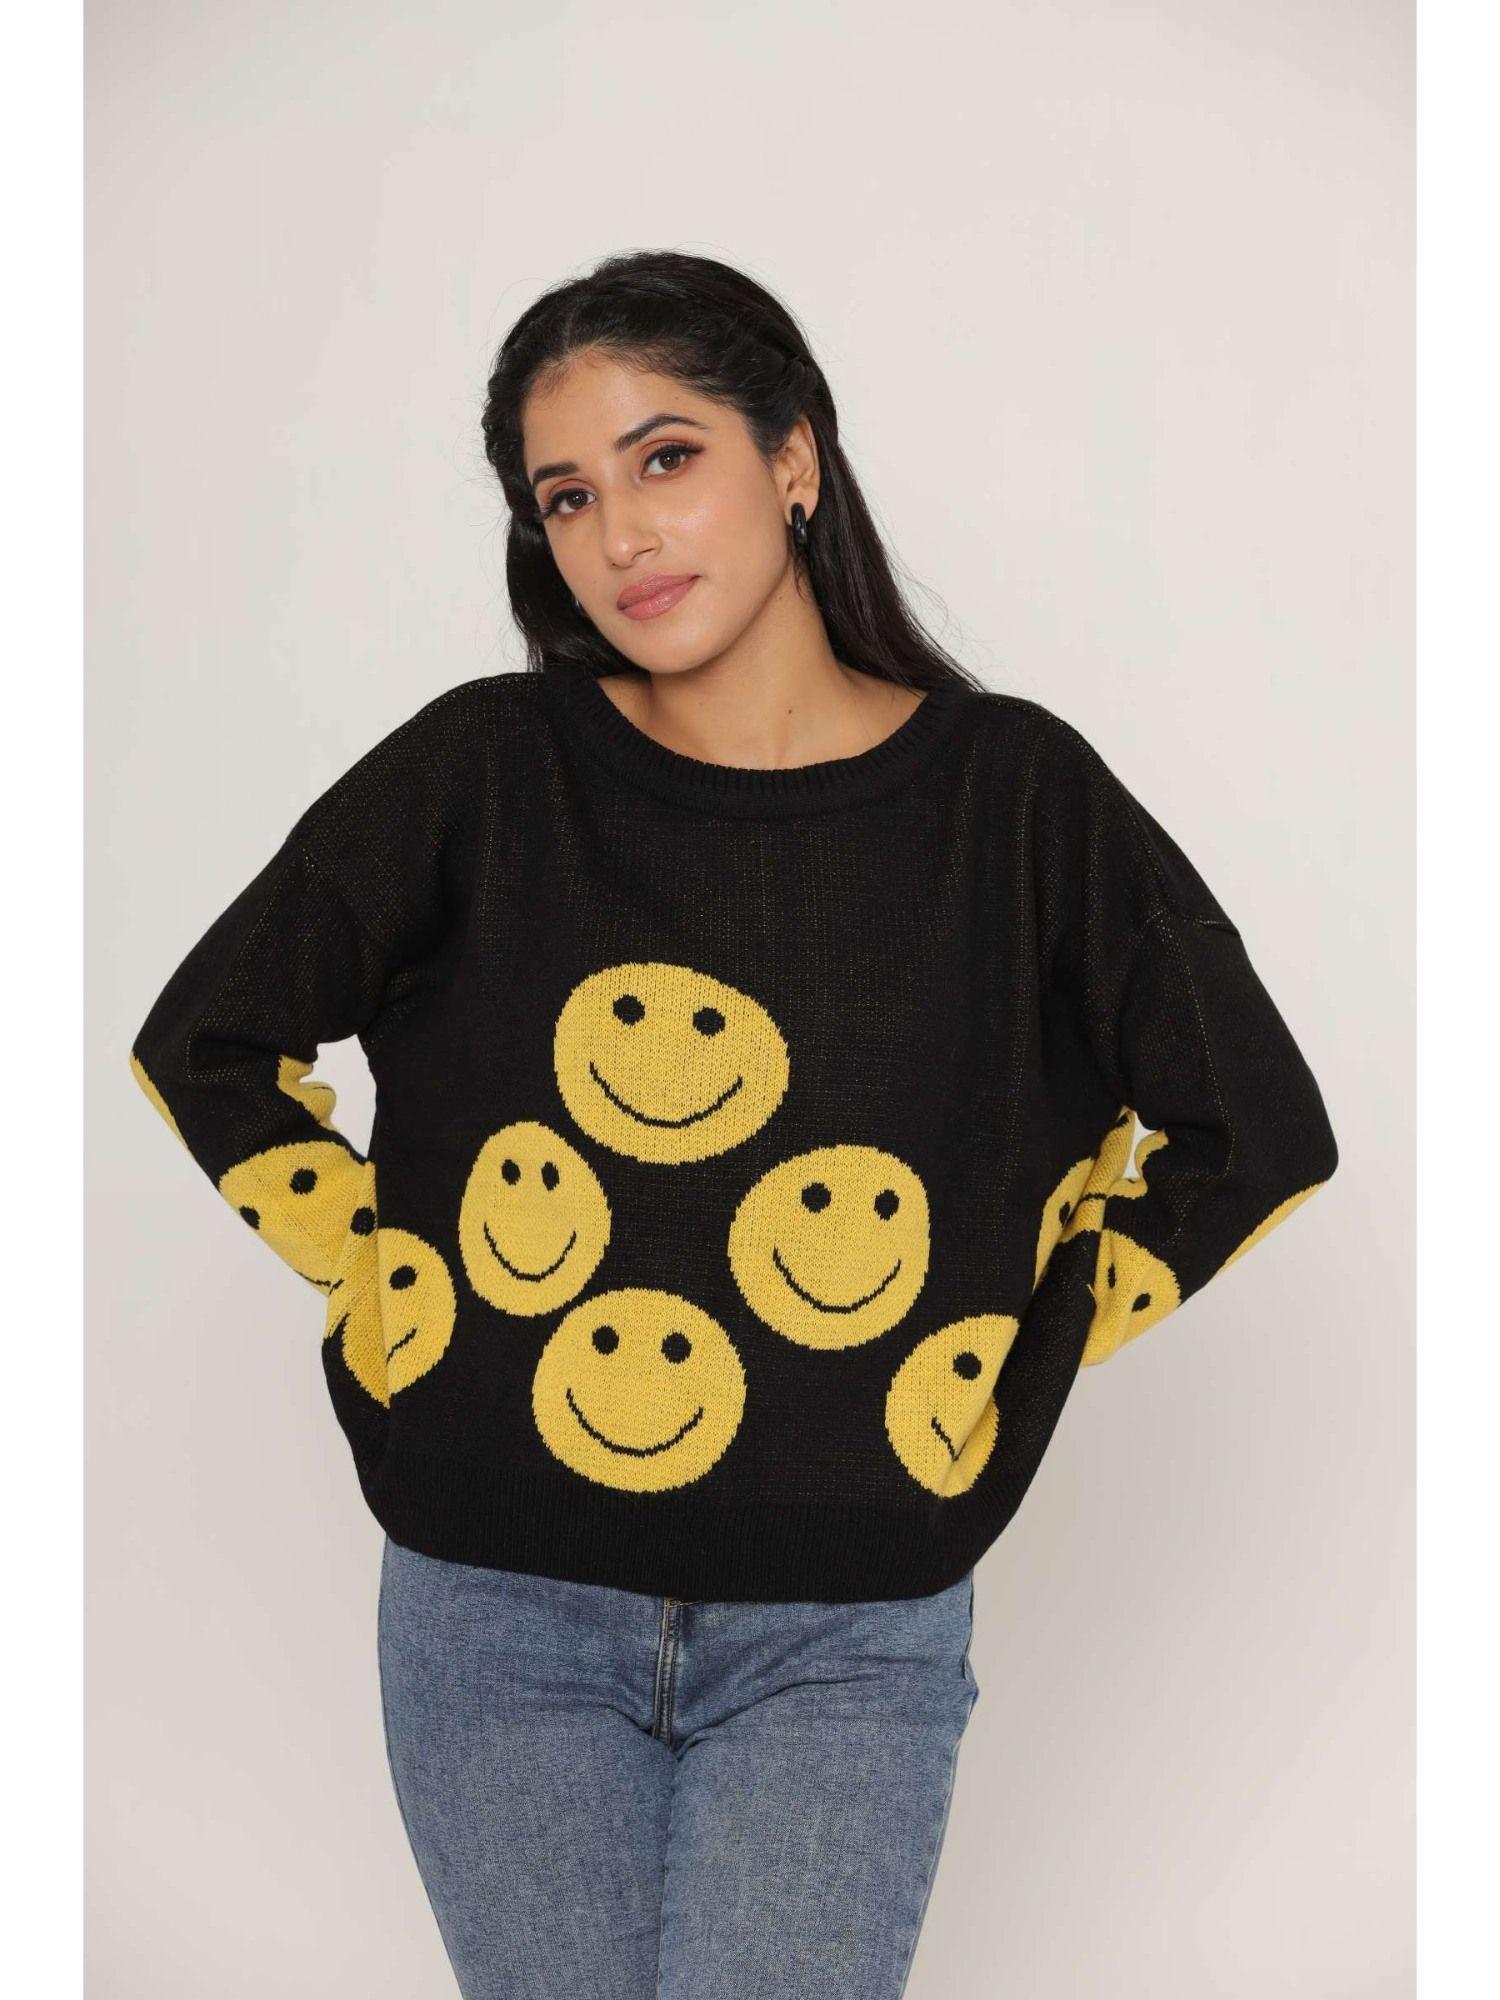 stylish oversized drop shoulders smilie woollen sweaters for women